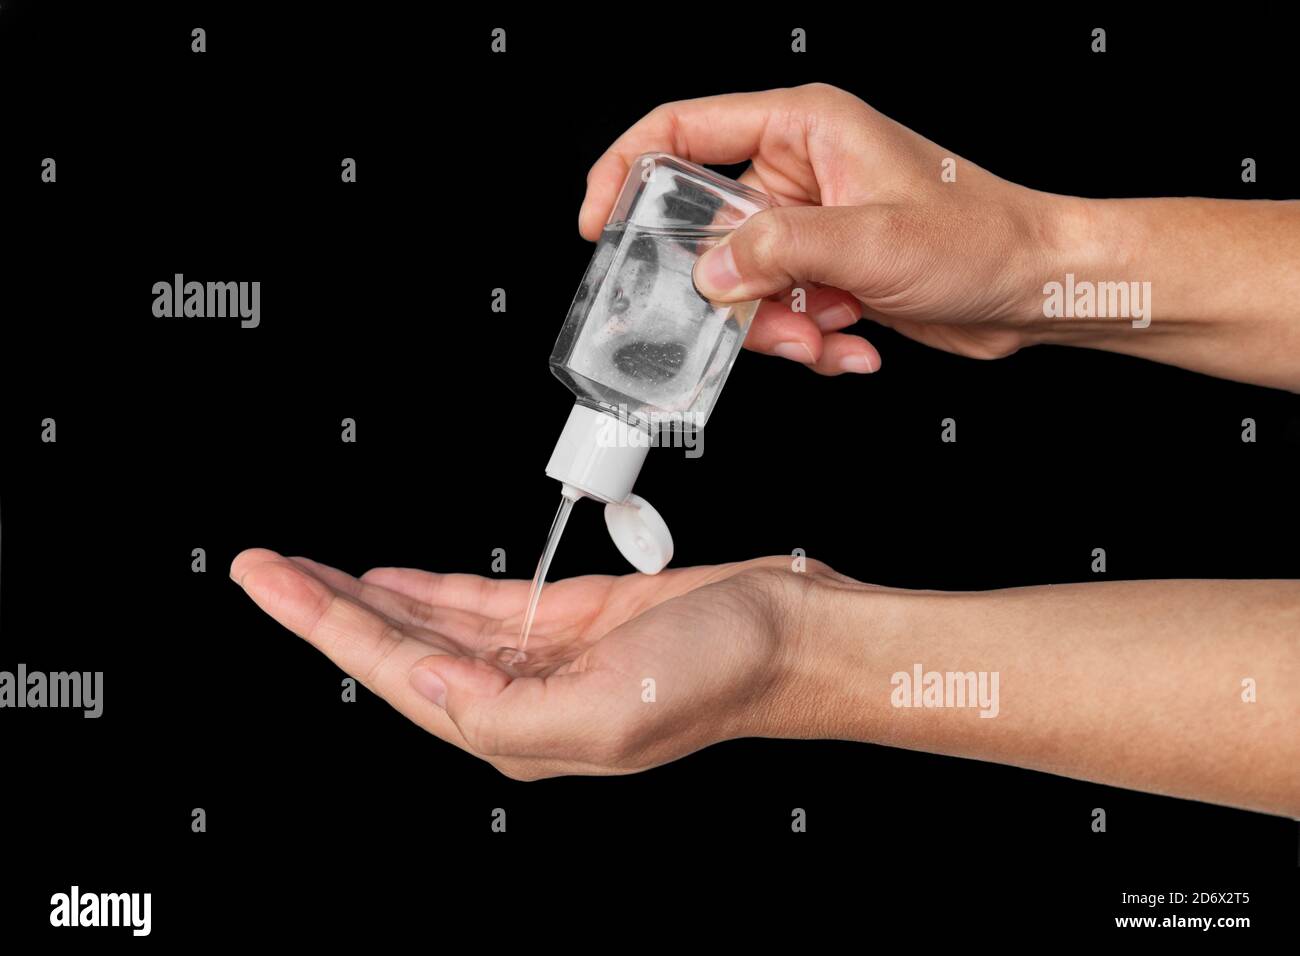 Petit flacon de désinfectant portatif pour les mains. Femme utilisant pour aller distributeur pour des mains propres pendant les déplacements ou les achats Banque D'Images